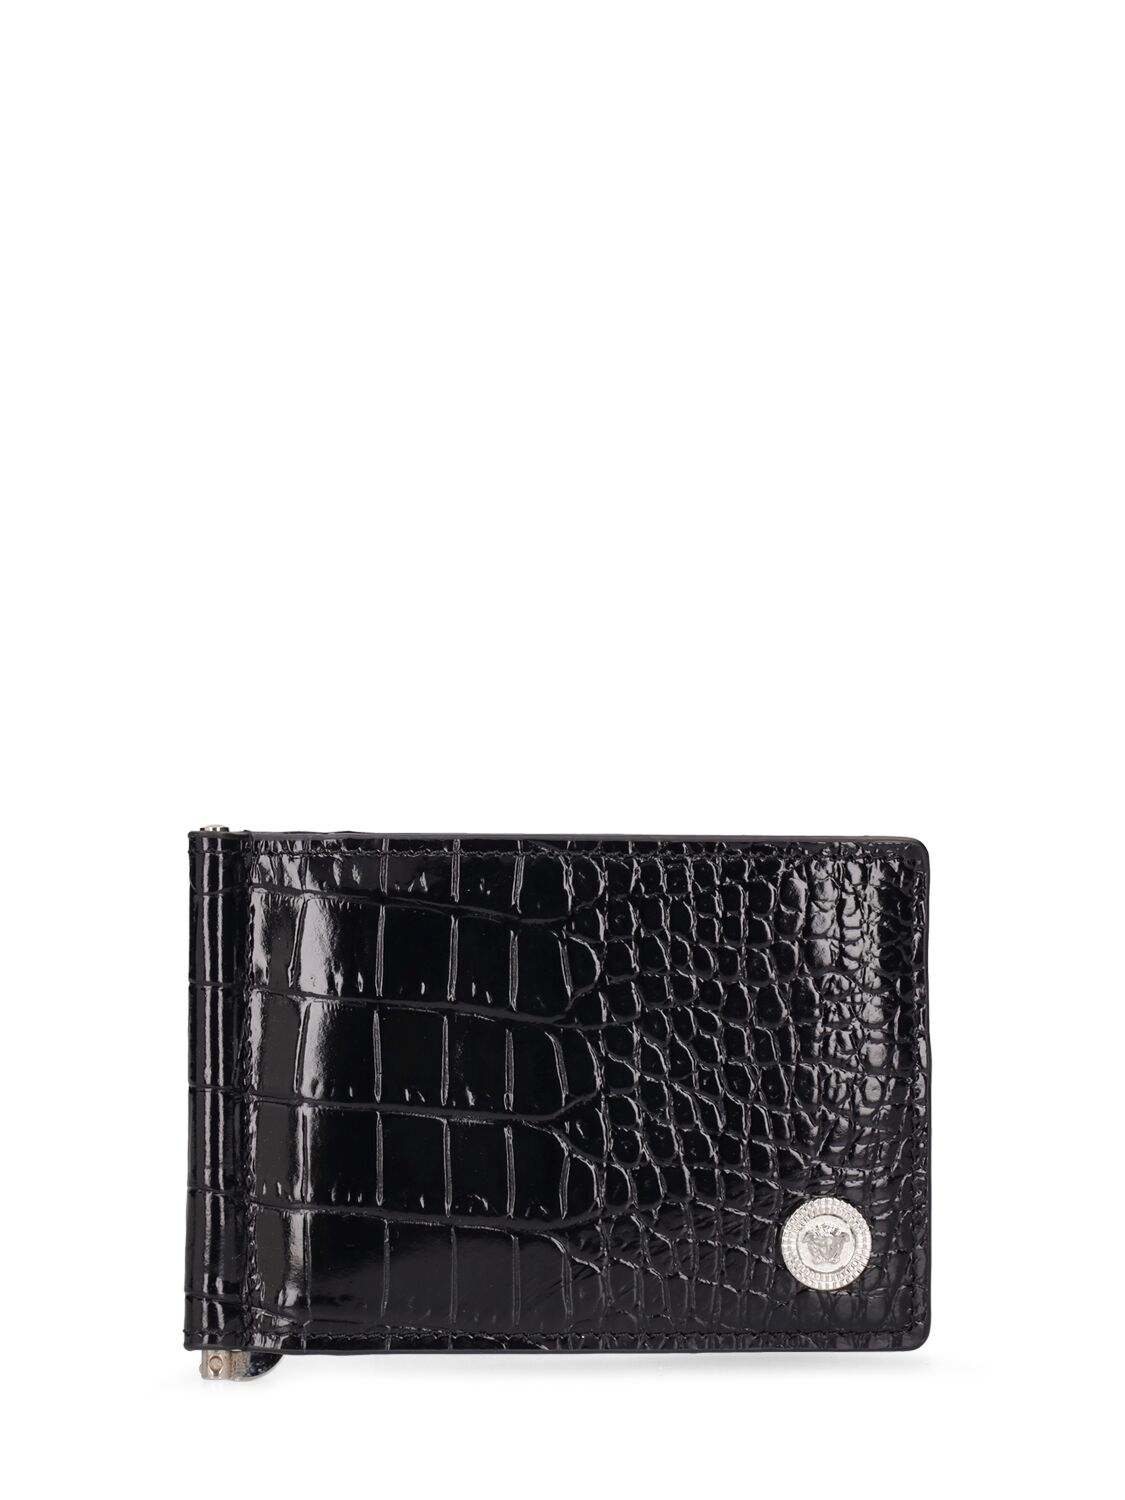 Versace Croc Embossed Leather Wallet In Black